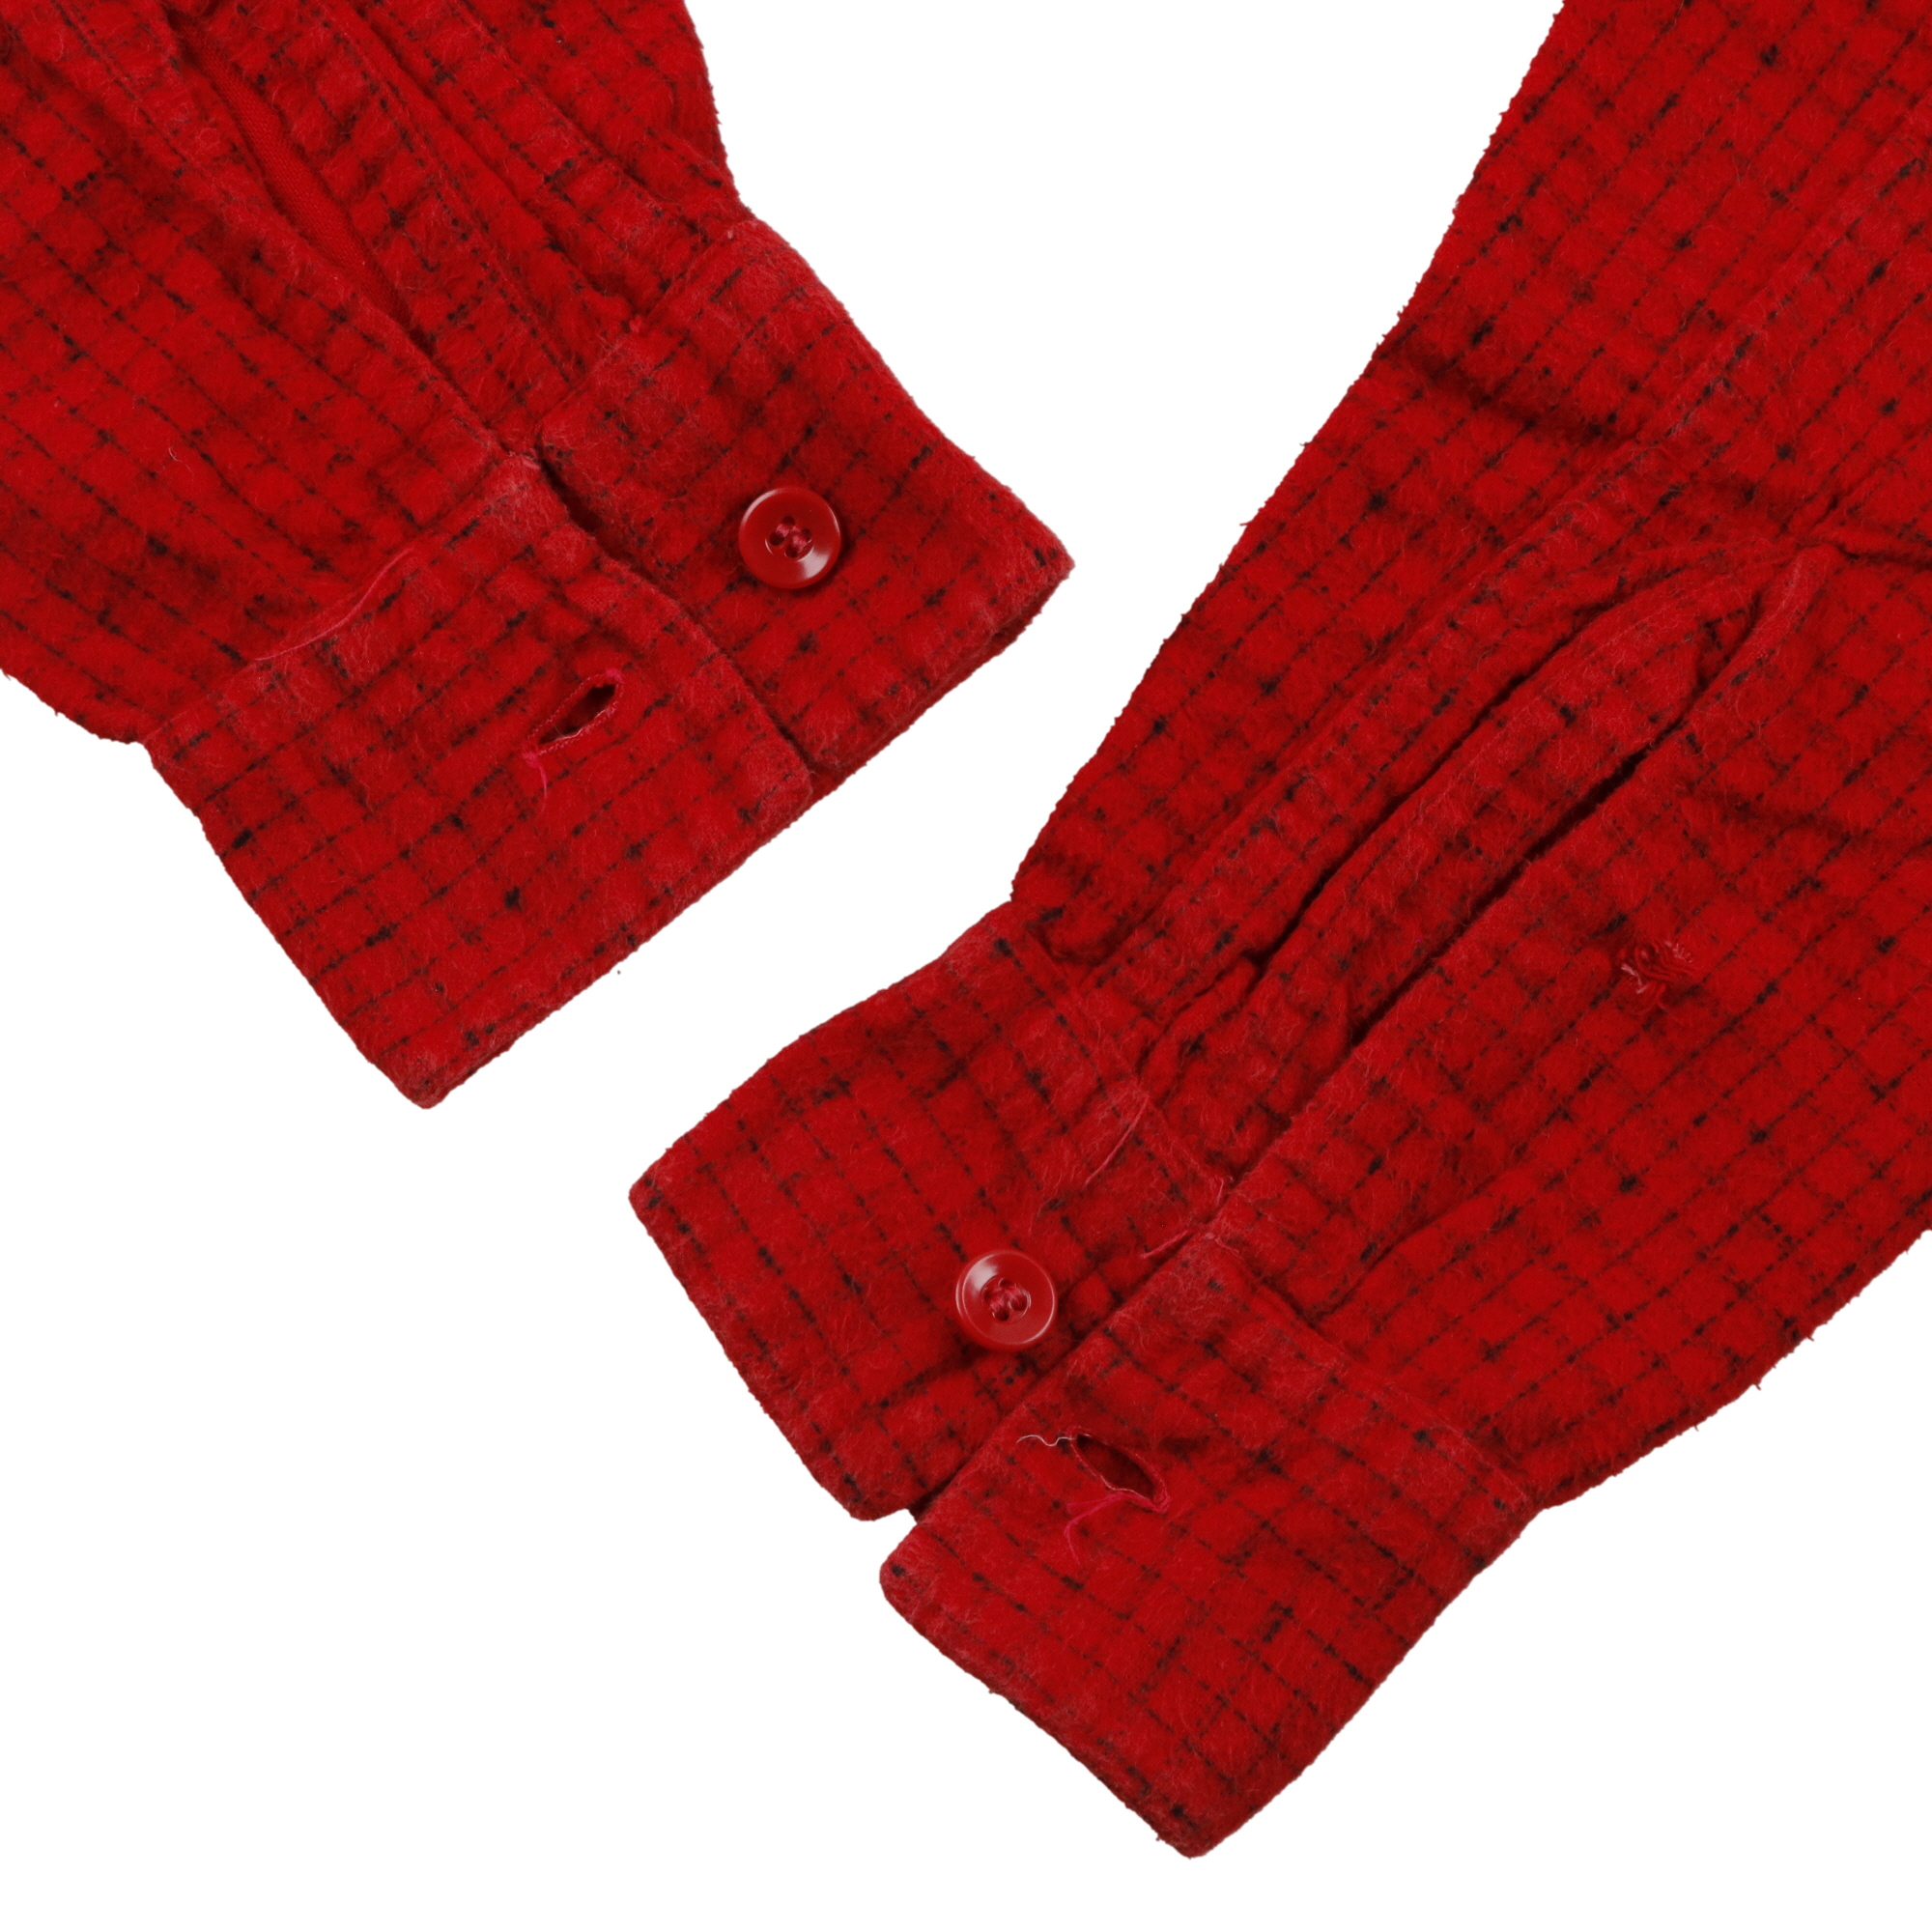 50s ヴィンテージ CAMPUS キャンパス オープンカラー プリントネルシャツ L/S 長袖 丸襟 袋襟 プリネル ネルシャツ チェック柄 赤 黒  レッド ブラック S